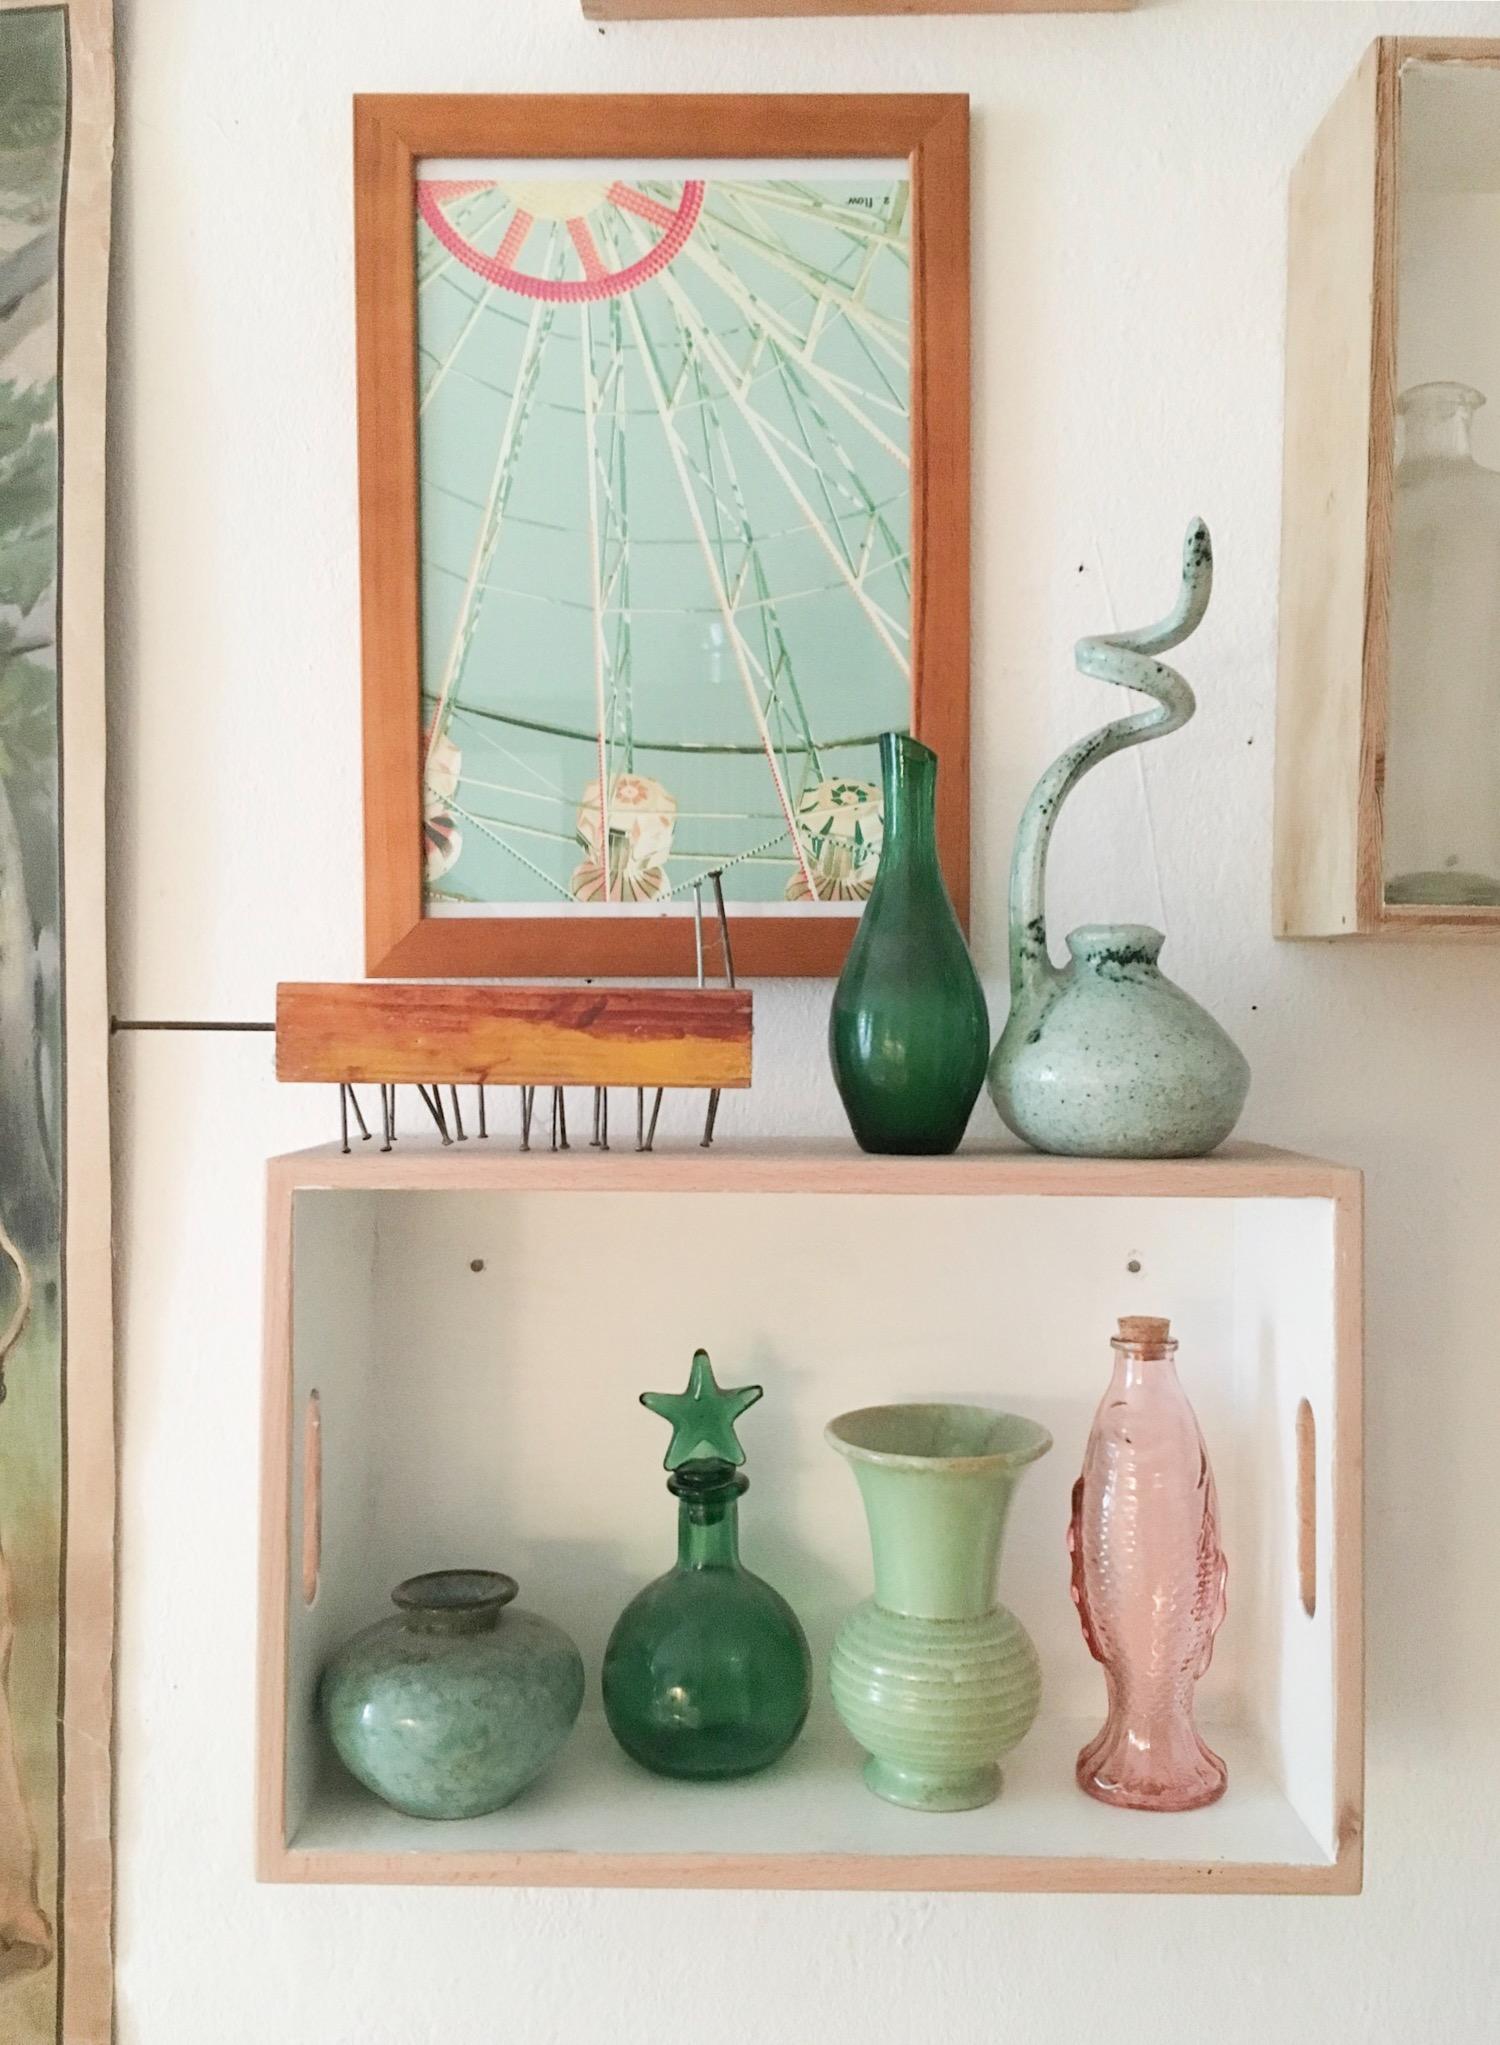 Kleine Sammlung an der Wand 💚 #küche #bilderwand #illustration #mint #grün 